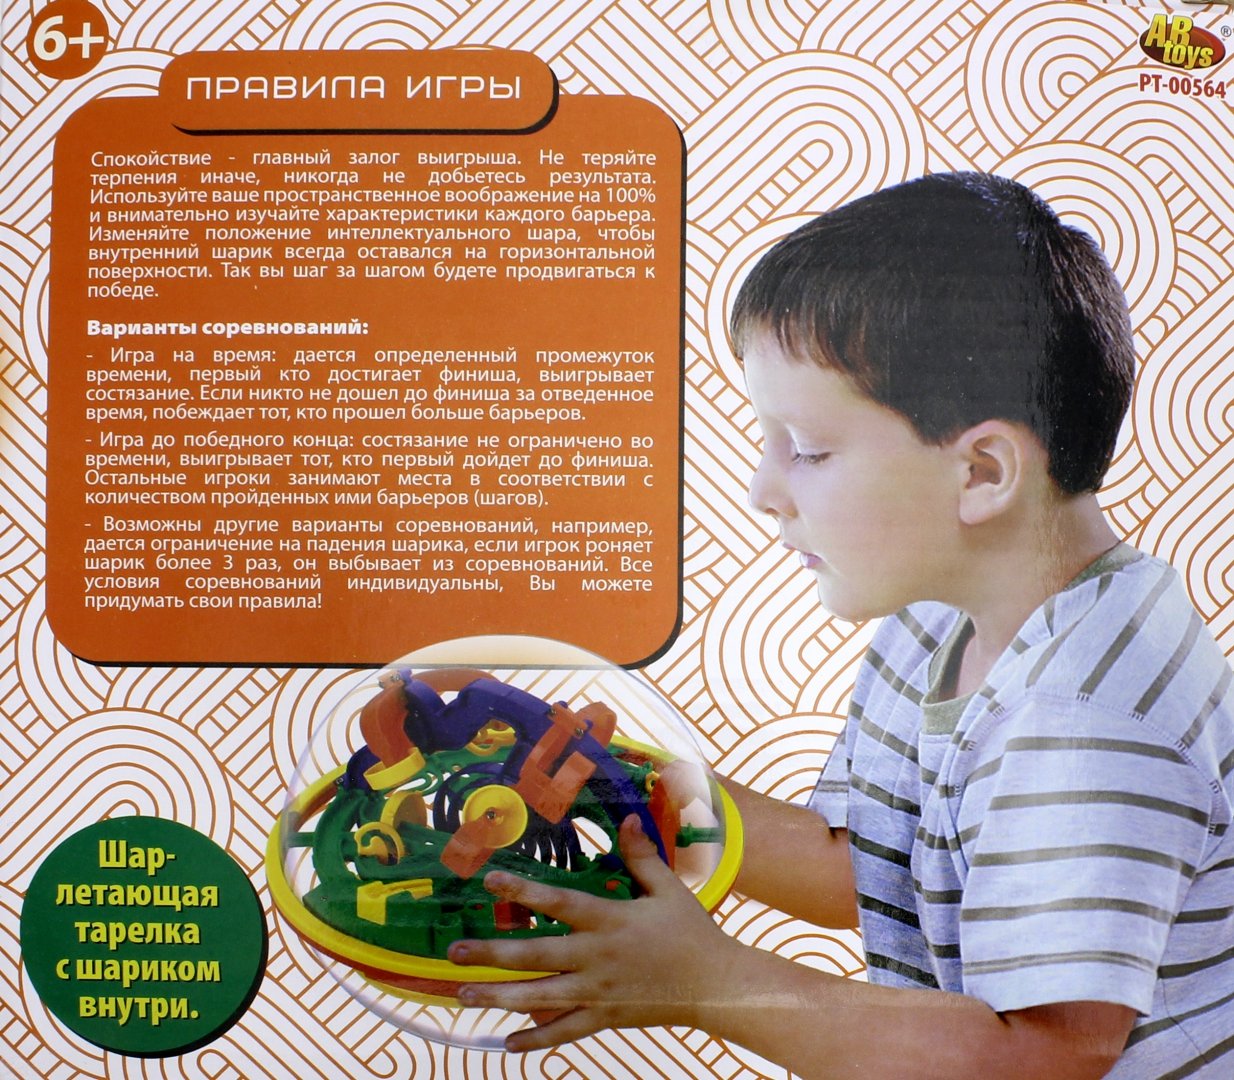 Иллюстрация 1 из 2 для Развивающая игра "Интеллектуальный шар 3D" (100 барьеров) (РТ-00564) | Лабиринт - игрушки. Источник: Лабиринт